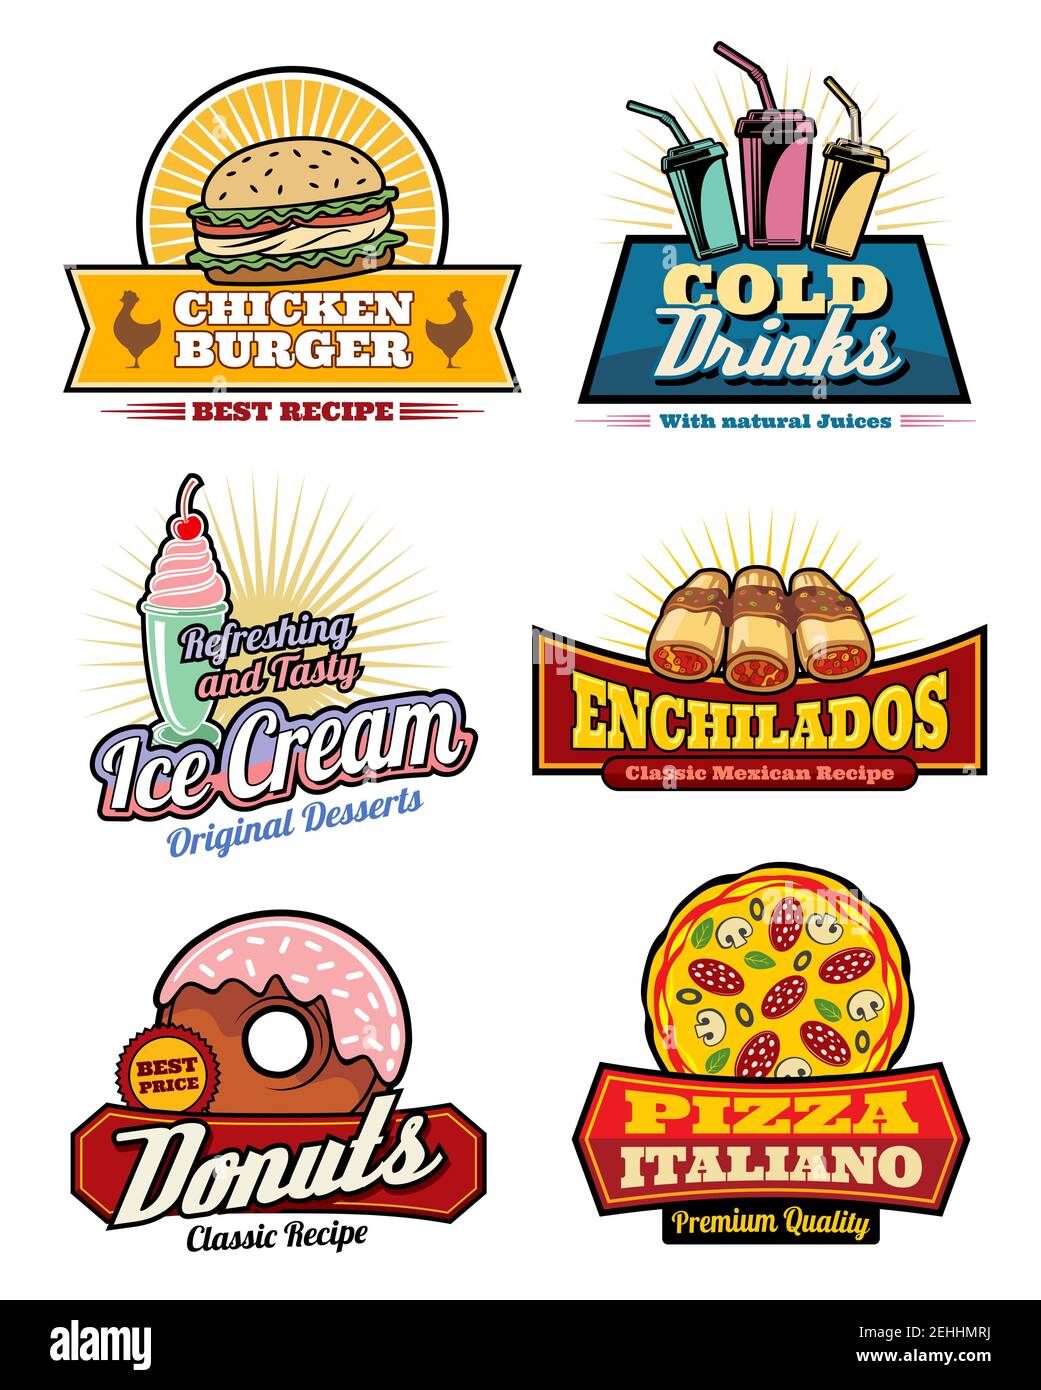 Iconos de comida rápida para el cine bistro bar o comida rápida restaurante  menú de aperitivos. Vector conjunto de hamburguesa de pollo, bebidas  gaseosas frías o helado y ench mexicano Imagen Vector